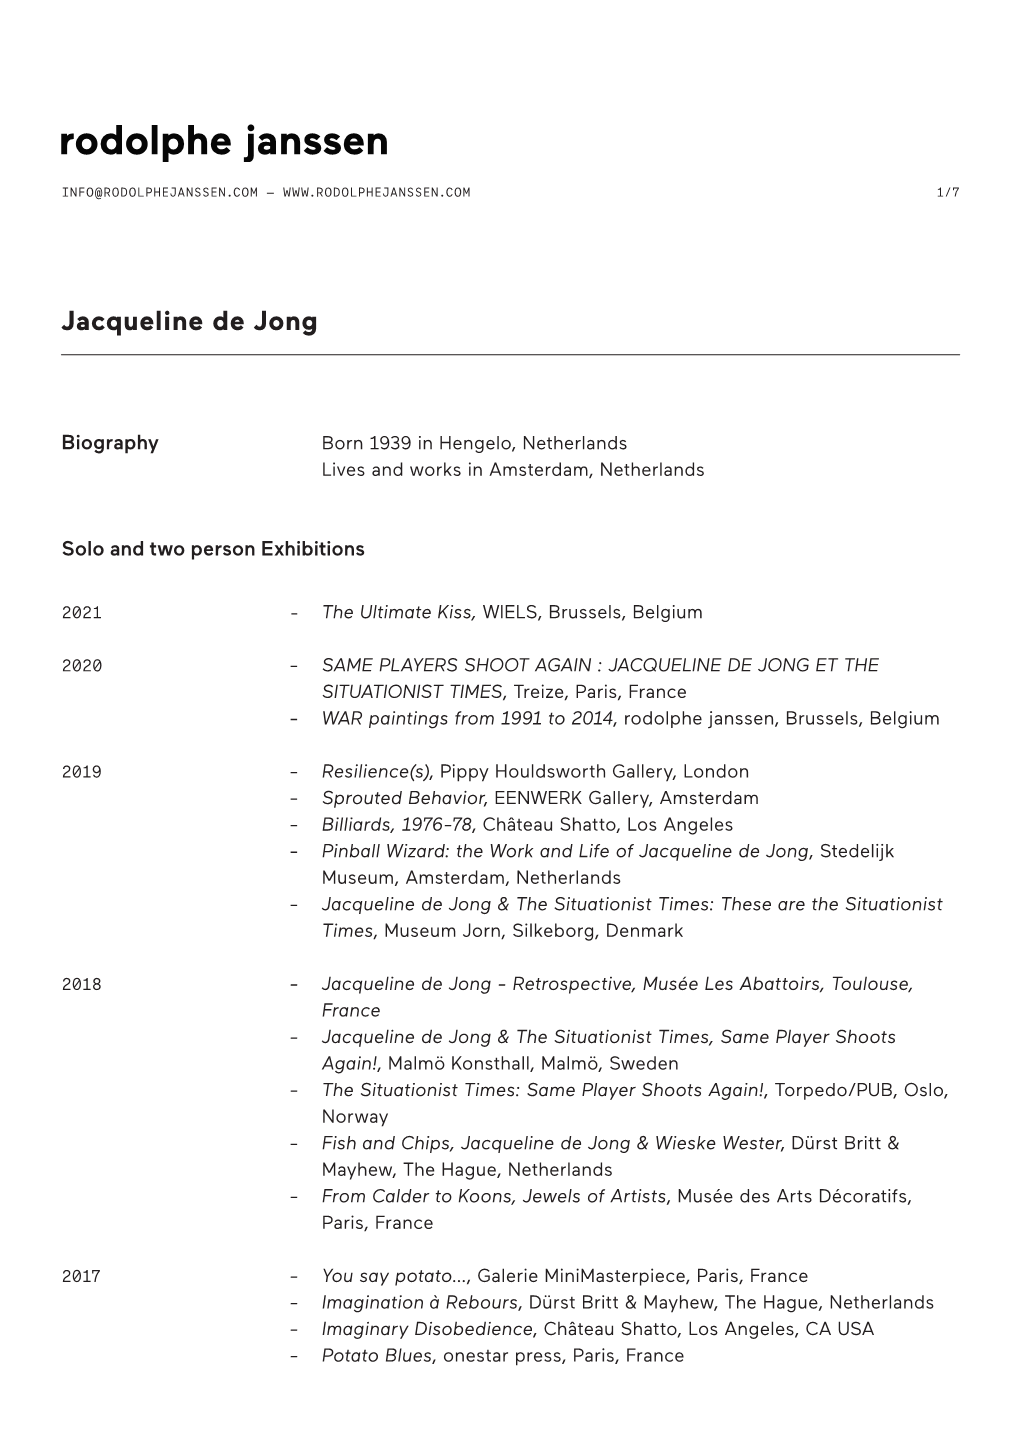 Jacqueline De Jong